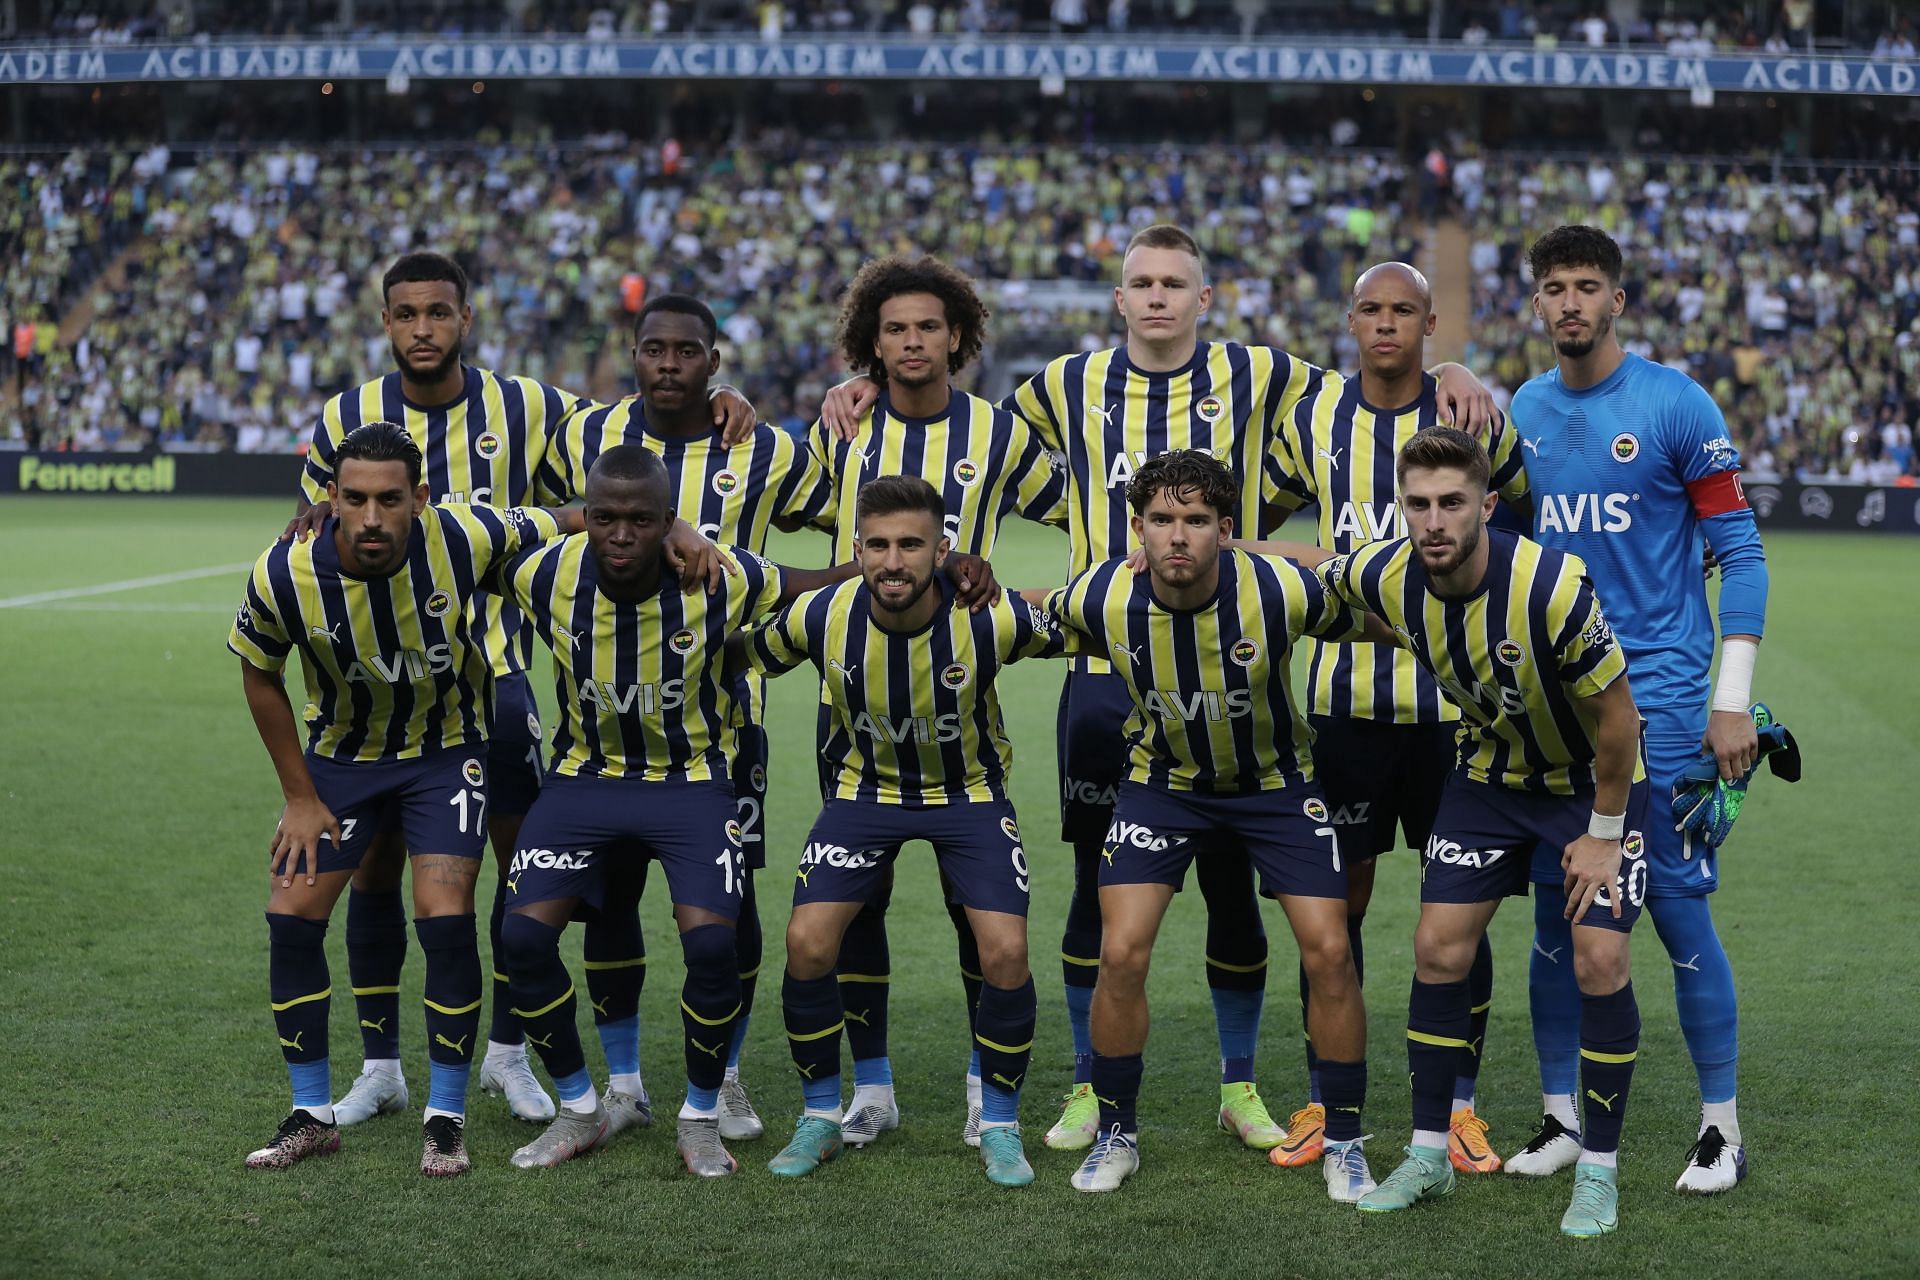 Tombense vs Ponte Preta: A Clash of Potential in Brazilian Football